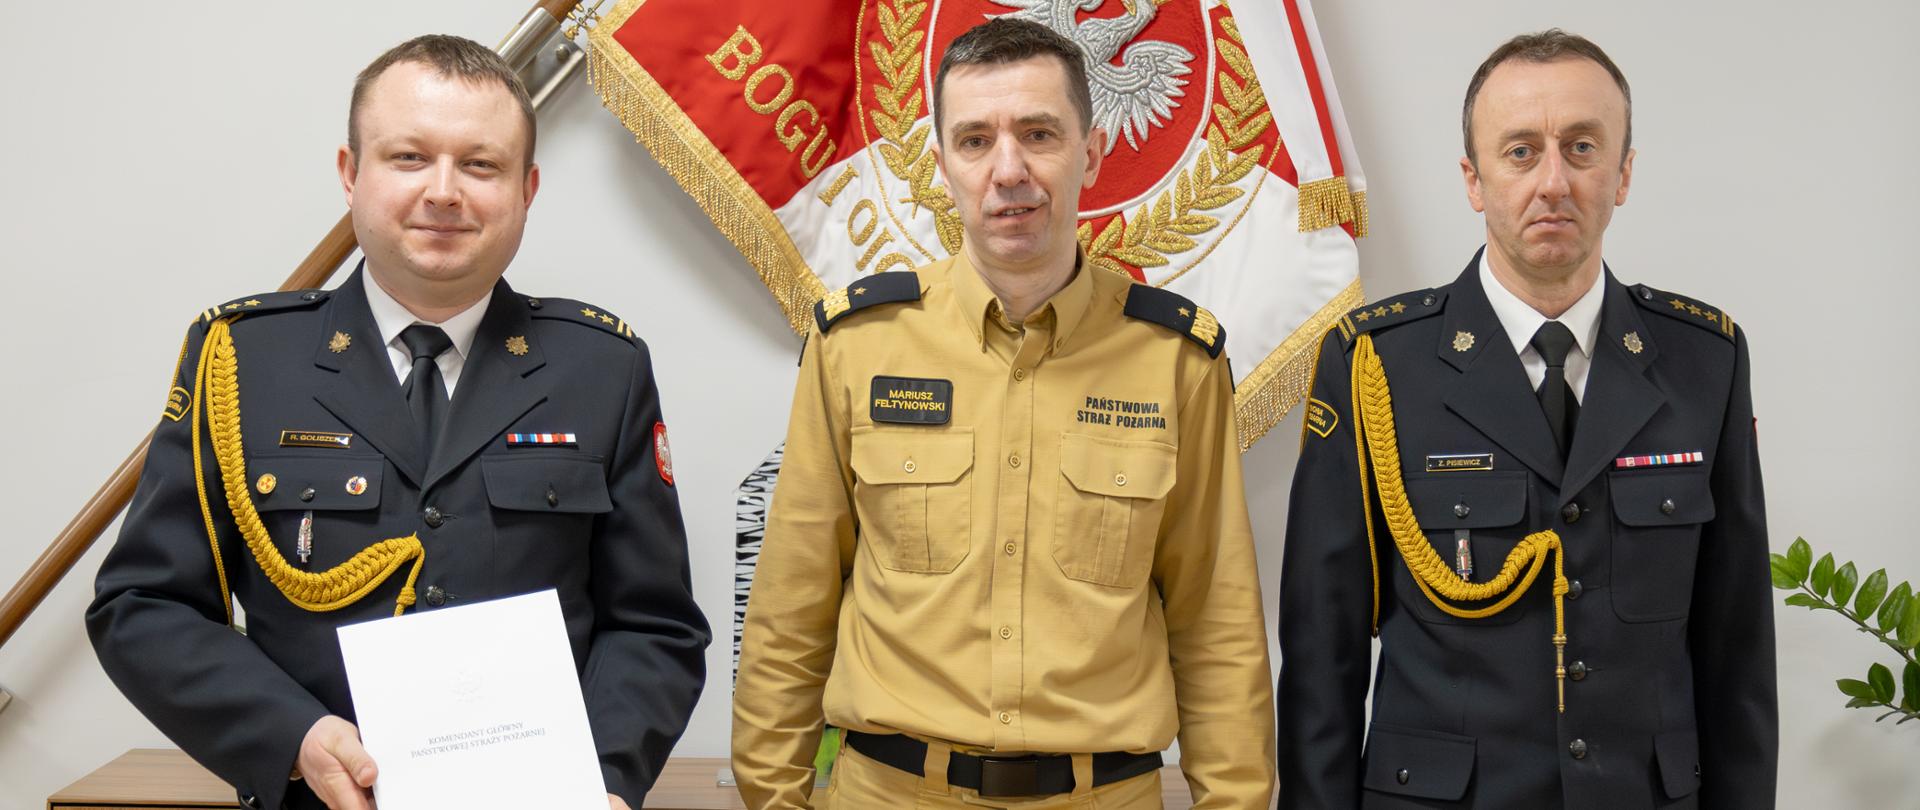 Komendant główny PSP pozuje do zdjęcia z nowo powołanym zastępcą lubelskiego komendanta wojewódzkiego PSP oraz z lubelskim komendantem wojewódzkim PSP. W tle na ścianie znajduje się sztandar. 